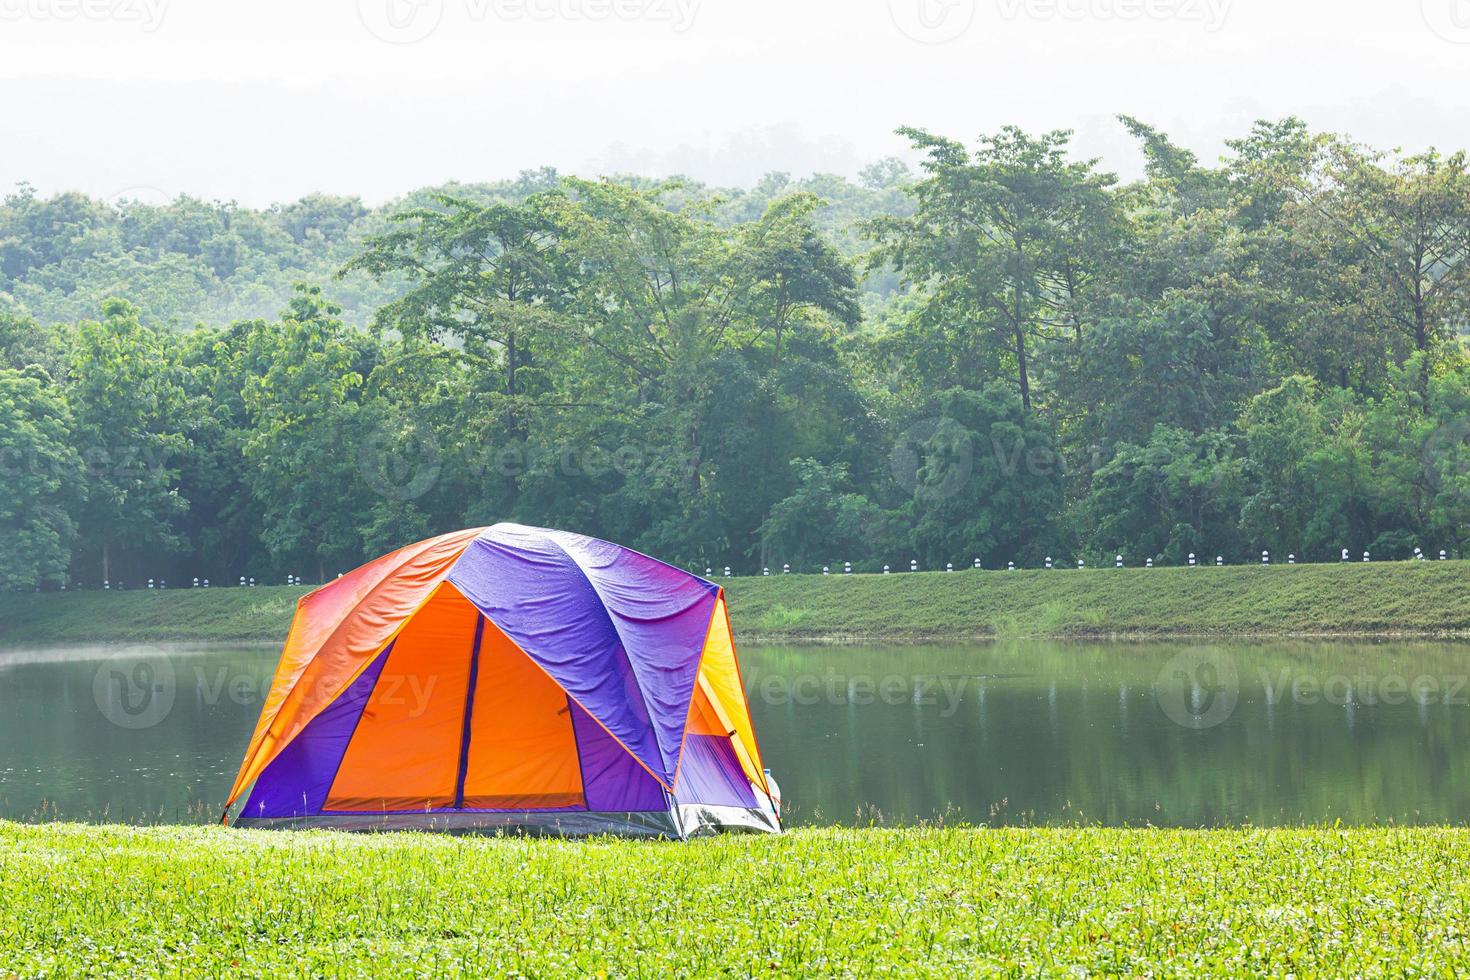 carpa domo acampar al lado del lago foto